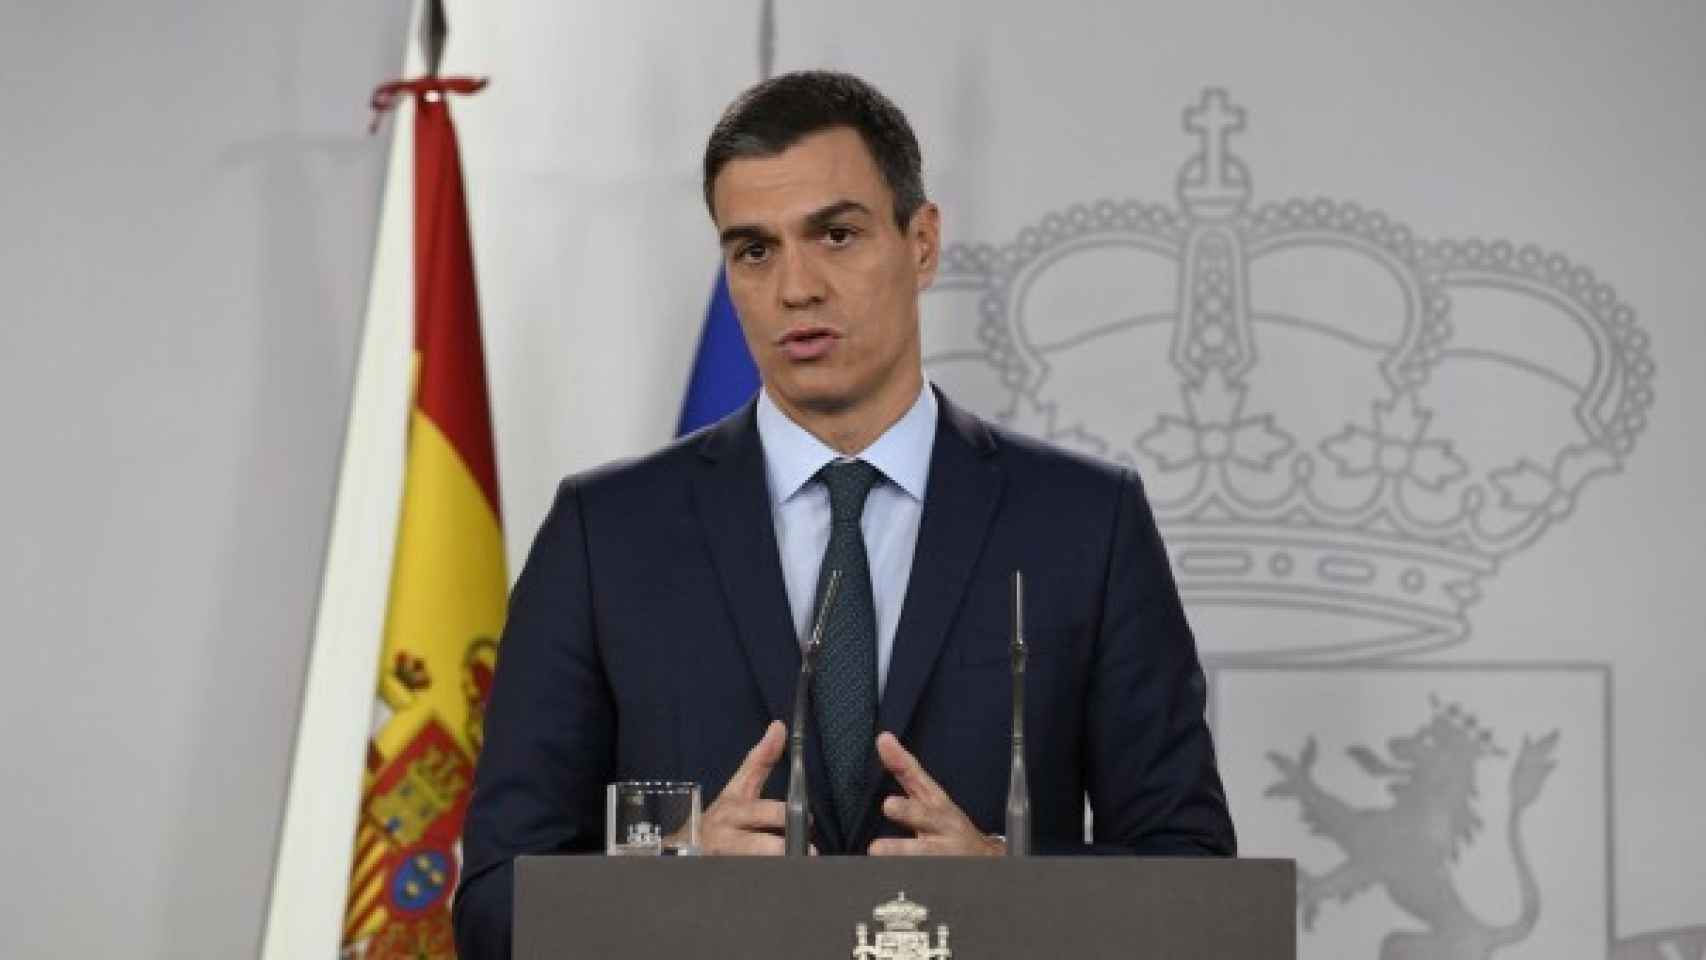 Pedro Sánchez comparece ante los medios para explicar su postura sobre Venezuela.